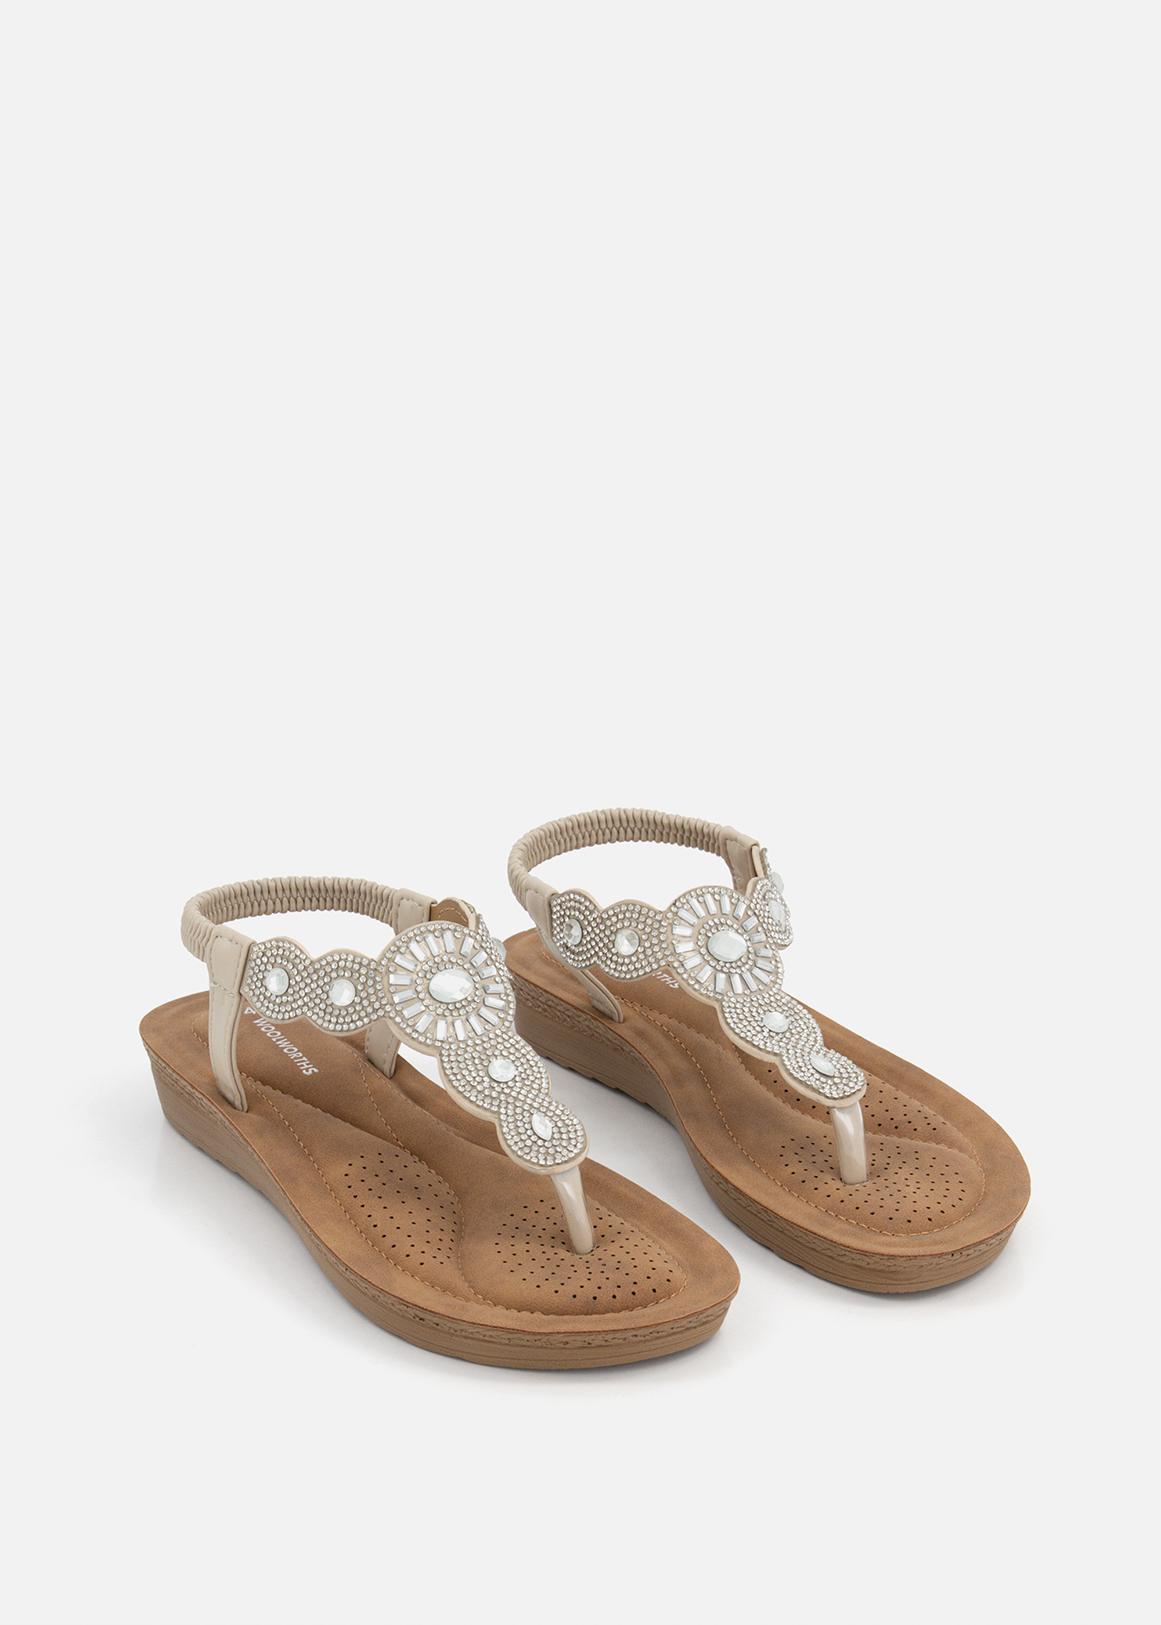 Bead Embellished Comfort Sandals